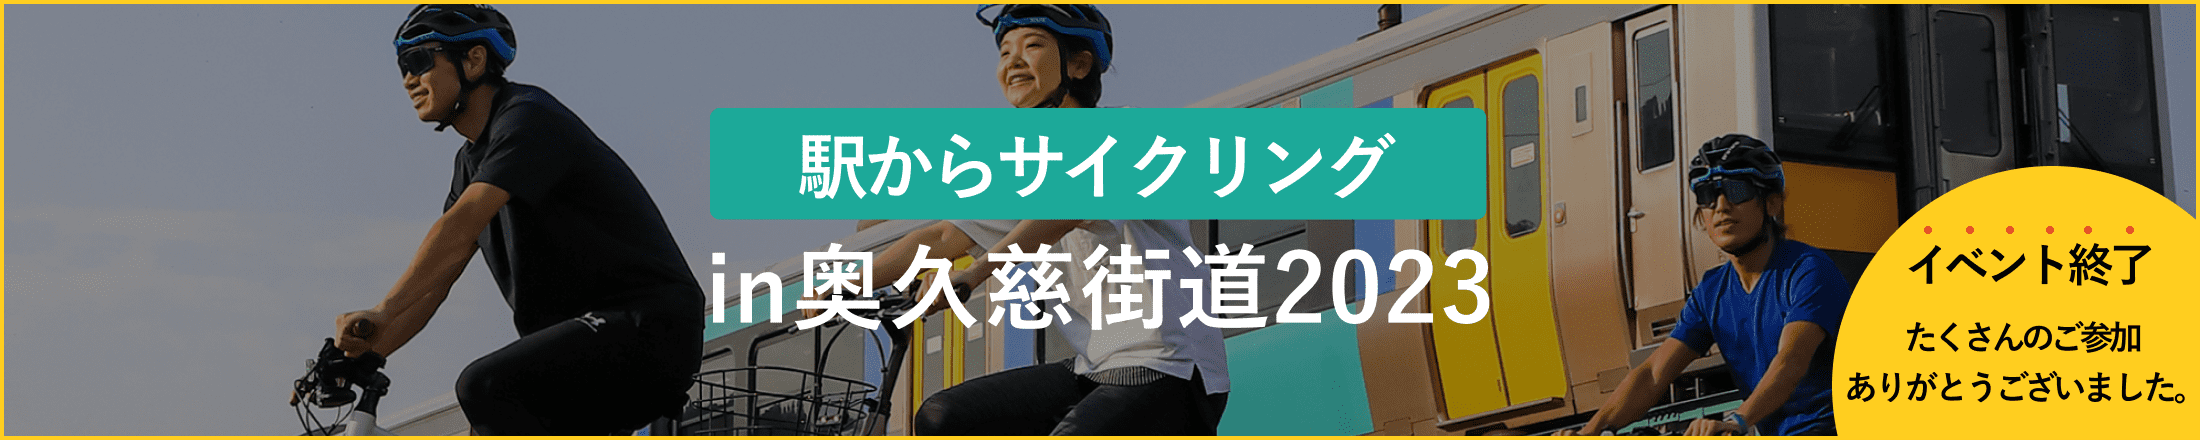 駅からサイクリングin奥久慈街道2023